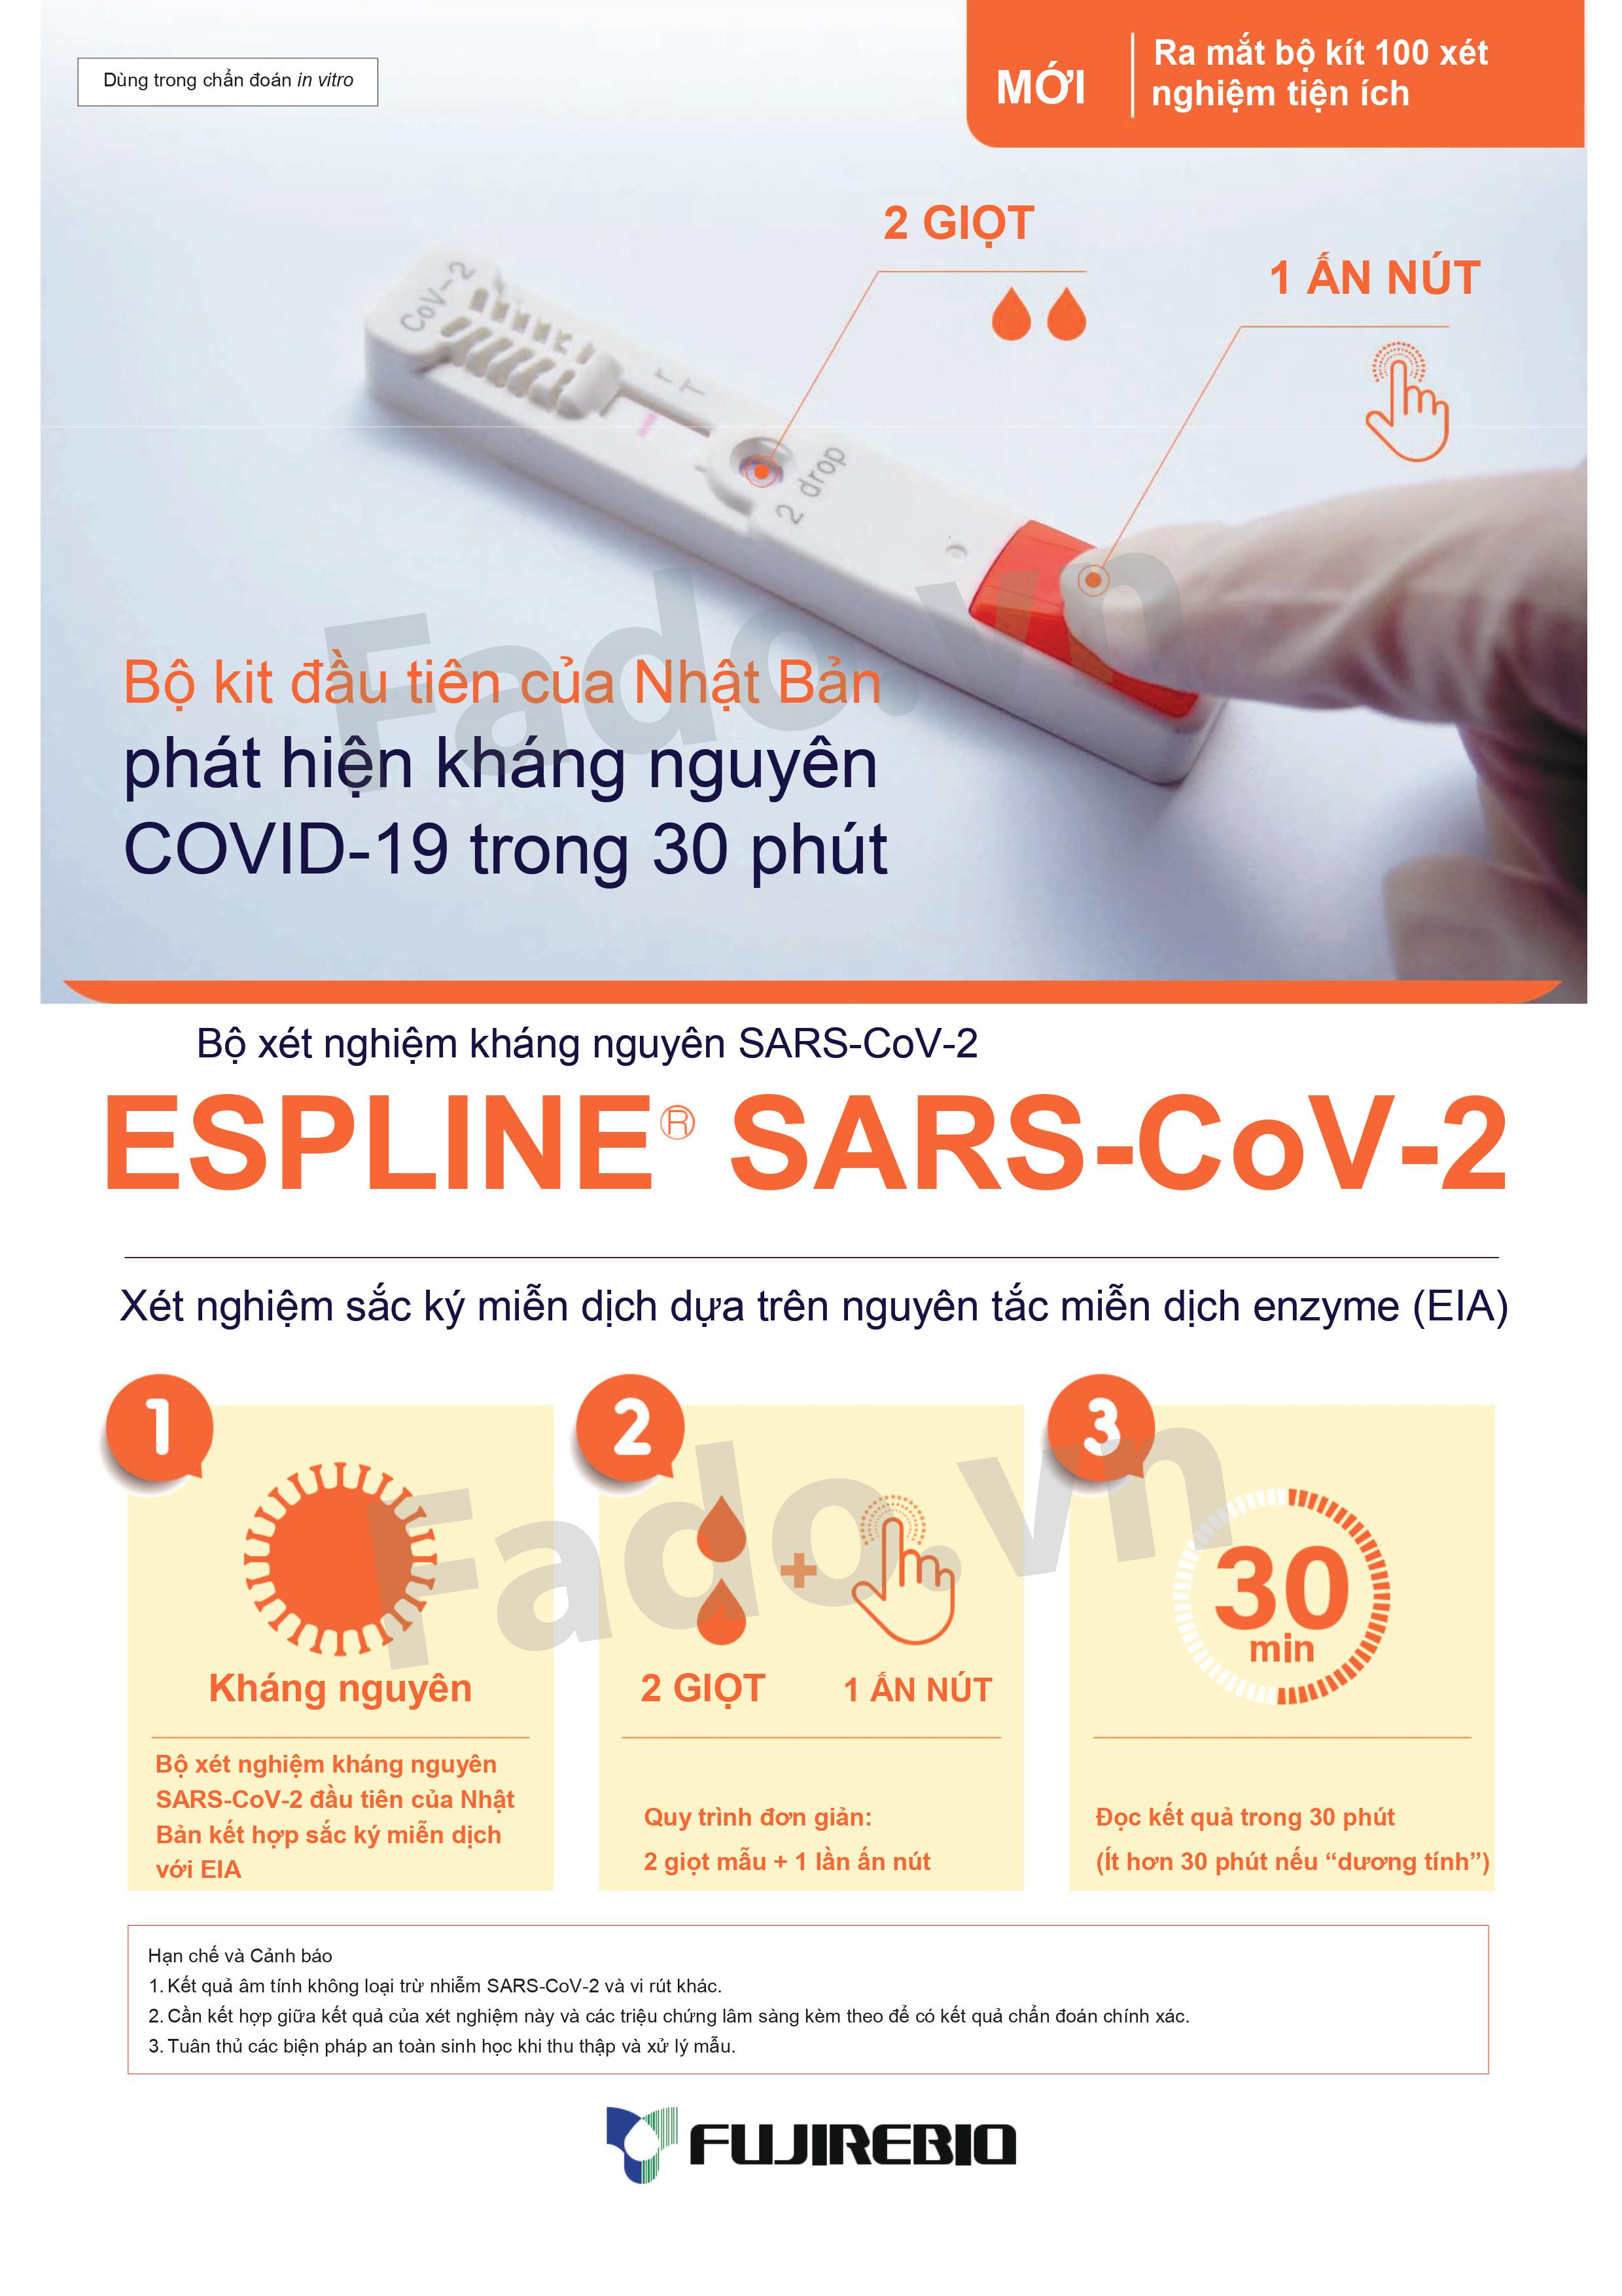 HÀNG CÓ SẴN - Combo 40 - Kit xét nghiệm kháng nguyên ESPLINE SARS-CoV-2 - Dựa trên nguyên tắc miễn dịch enzyme (EIA)